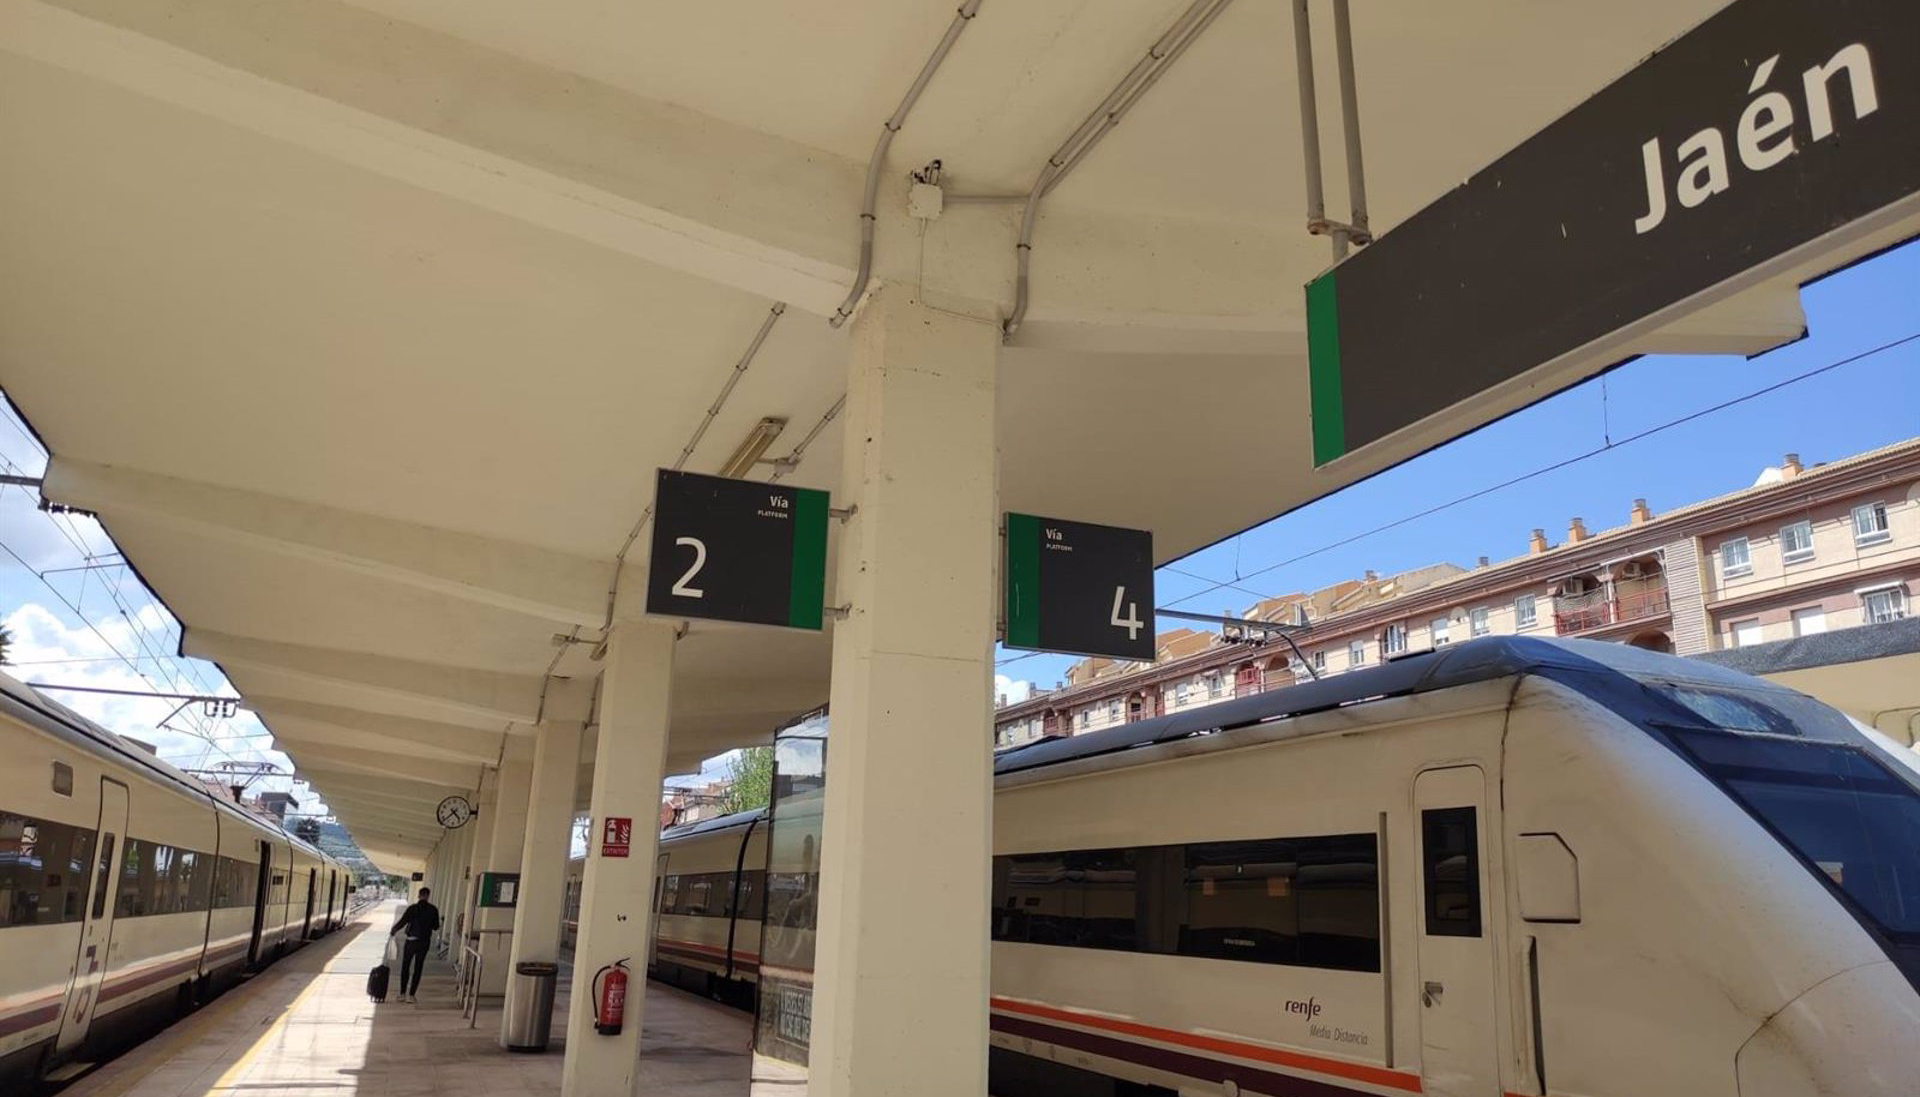 04/03/2022 Estación de tren de Jaén
SOCIEDAD ANDALUCÍA ESPAÑA EUROPA JAÉN
RENFE